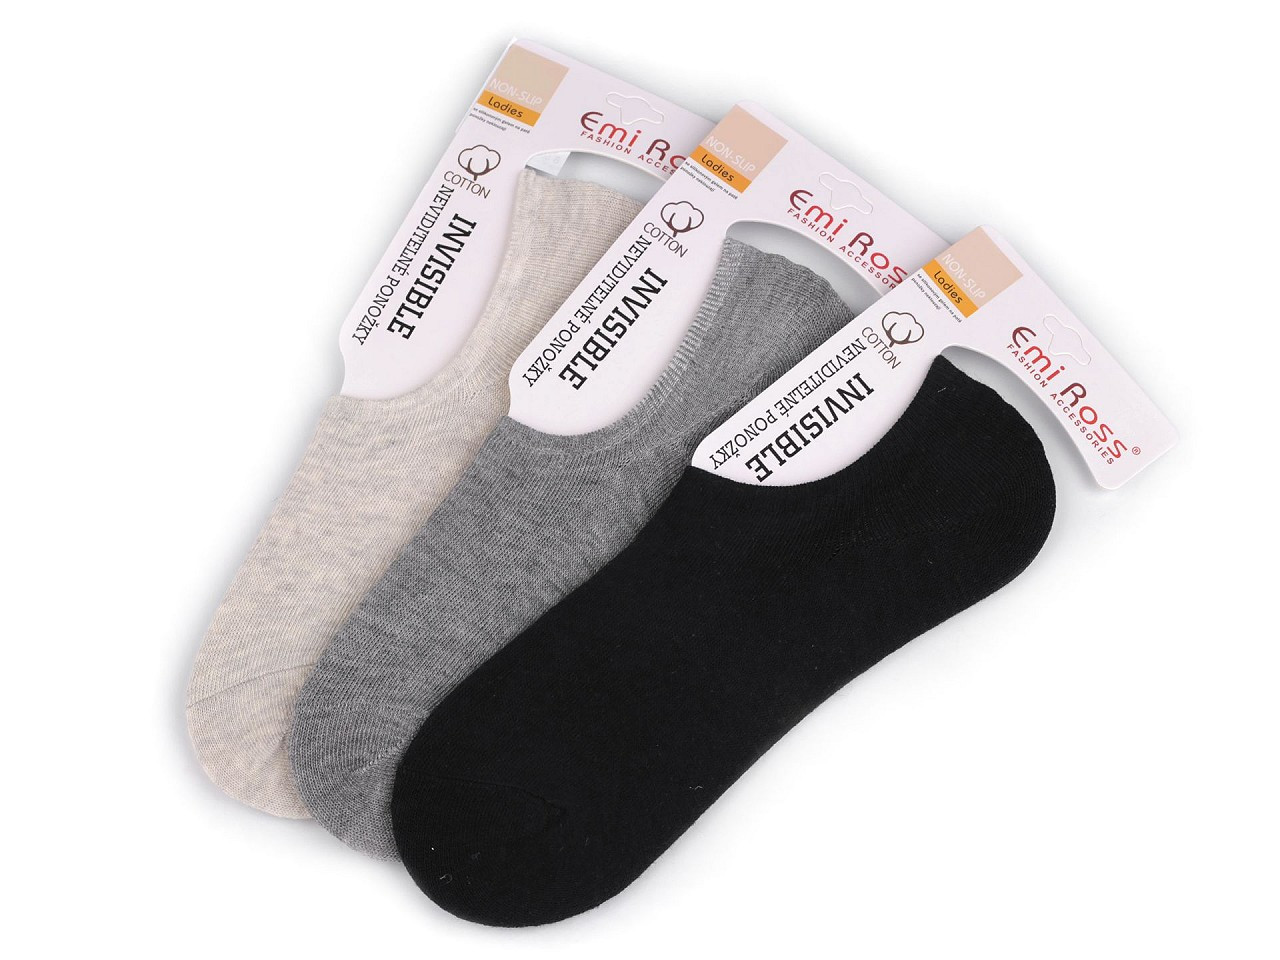 Dámské bavlněné ponožky do tenisek Emi Ross, barva 6 (vel. 35-38) mix